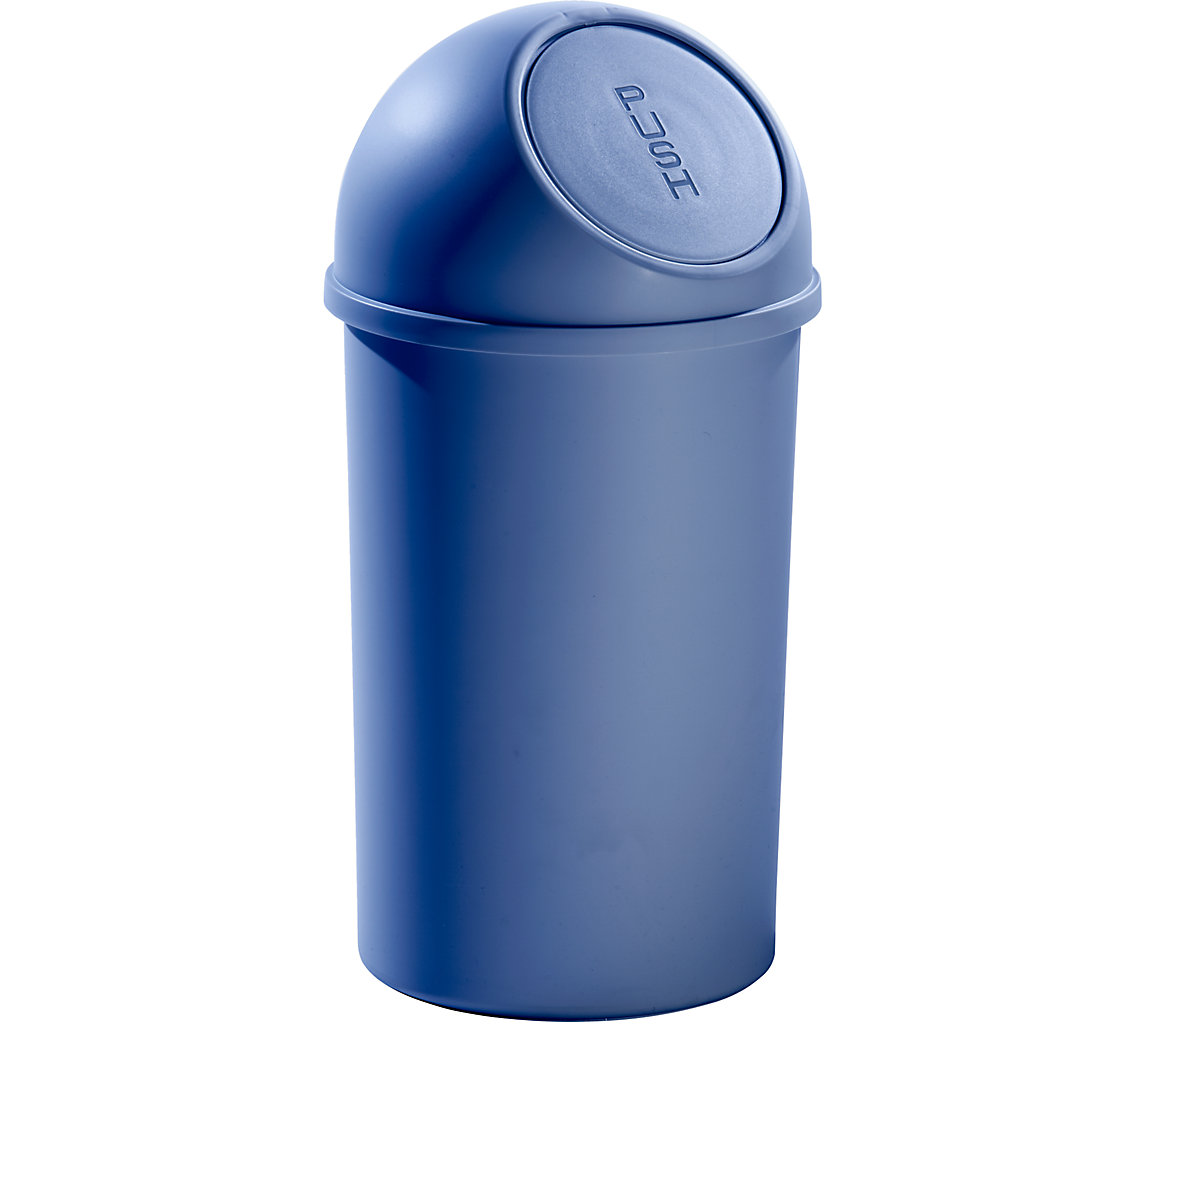 helit – Billenőfedeles műanyag szeméttároló, űrtartalom 25 l, ma x Ø 615 x 315 mm, kék, cs. e. 3 db